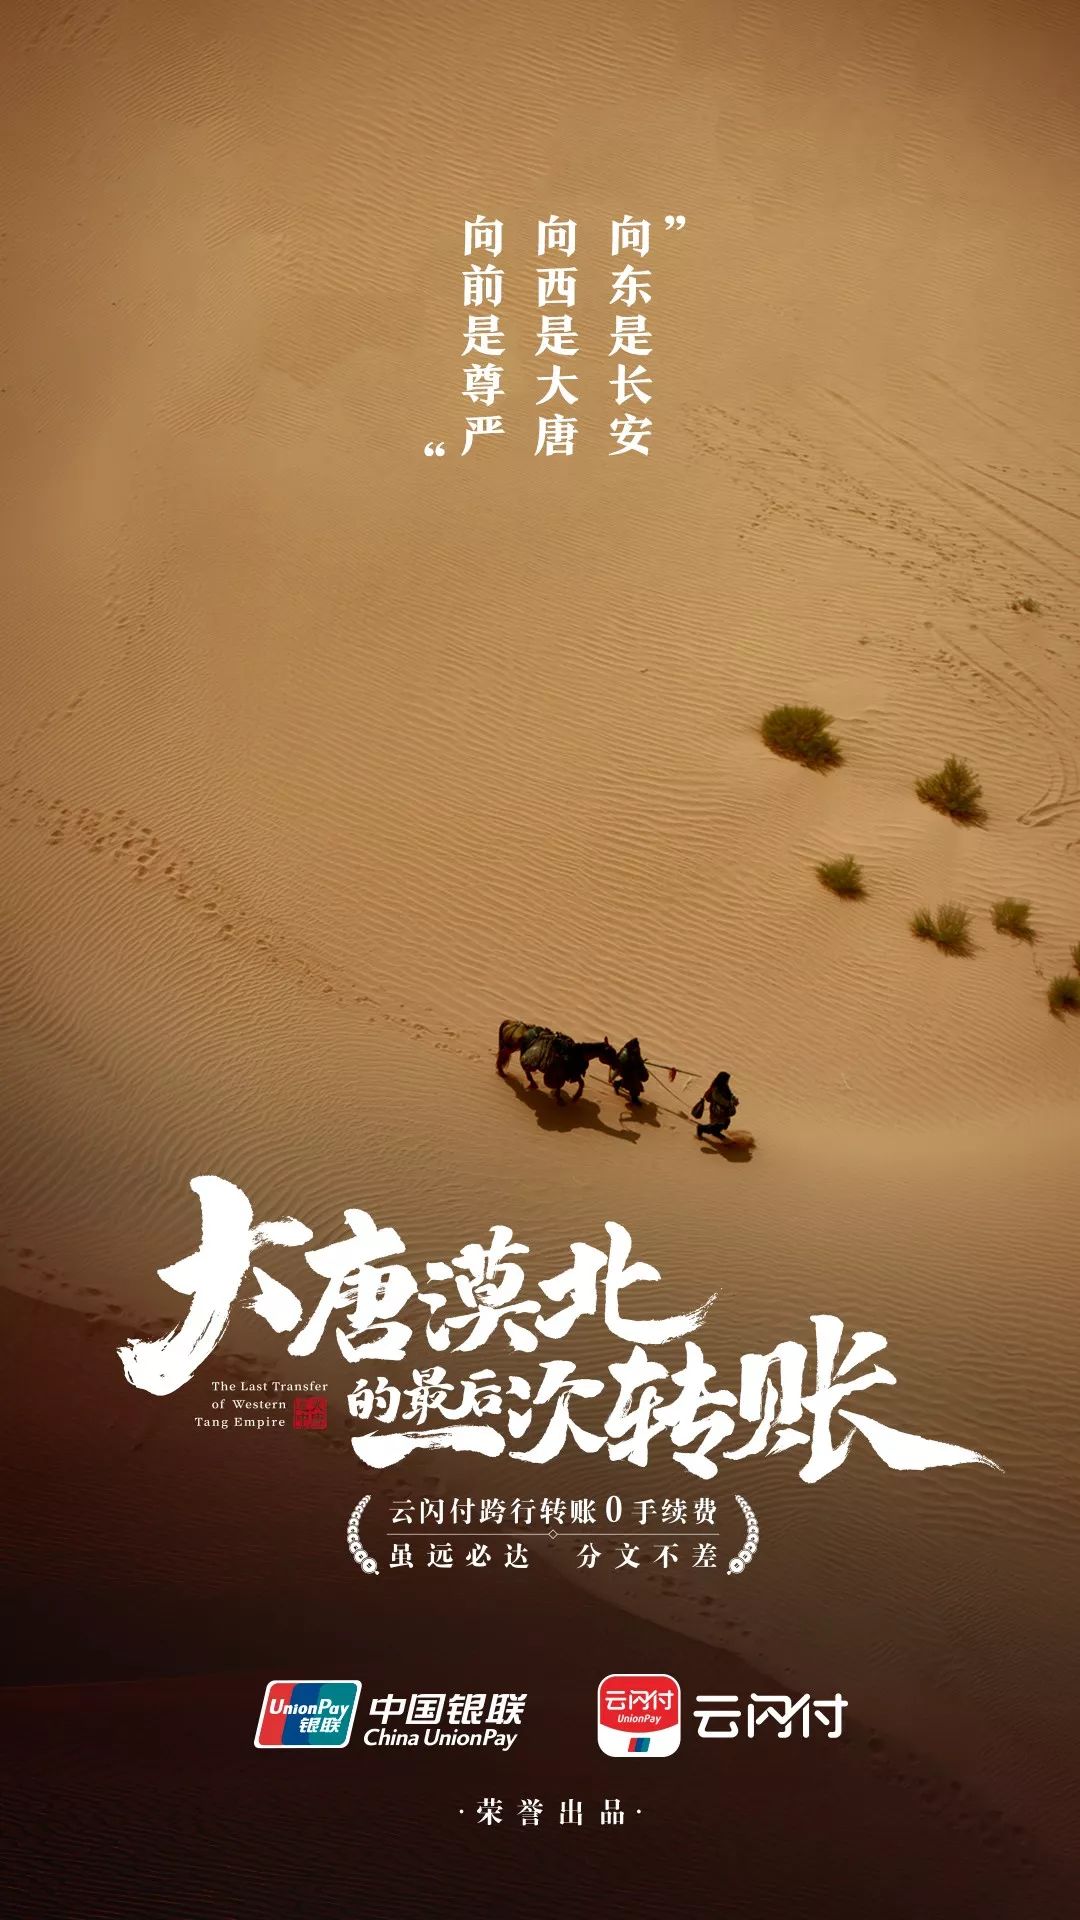 《大唐漠北的最后一次转账》 中国银联云闪付的这个广告片都比某些影视剧走心